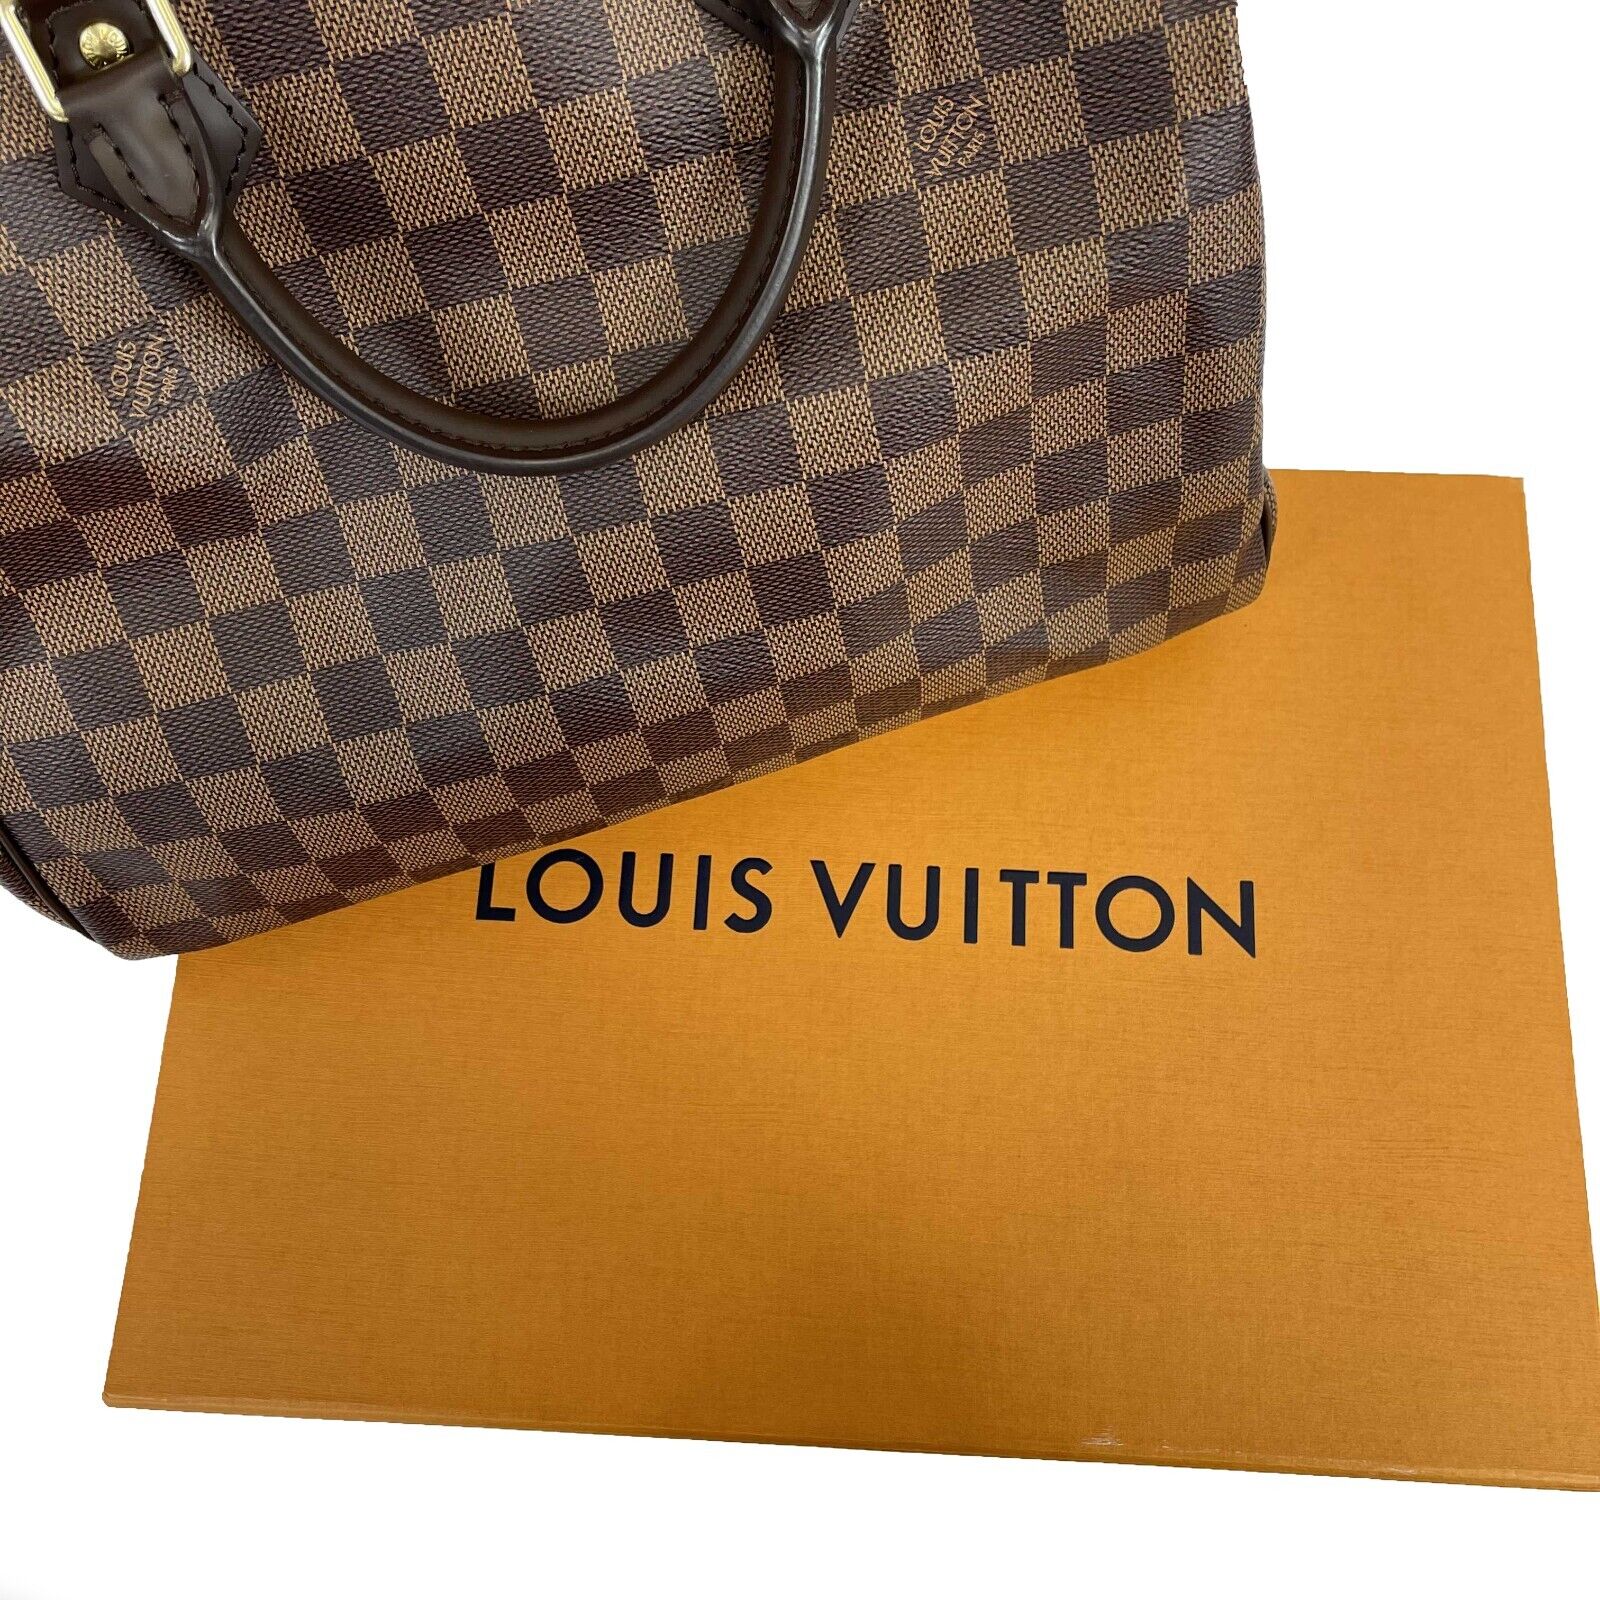 Louis Vuitton - Pristine - Damier Ebene Speedy 30 - Brown - Top